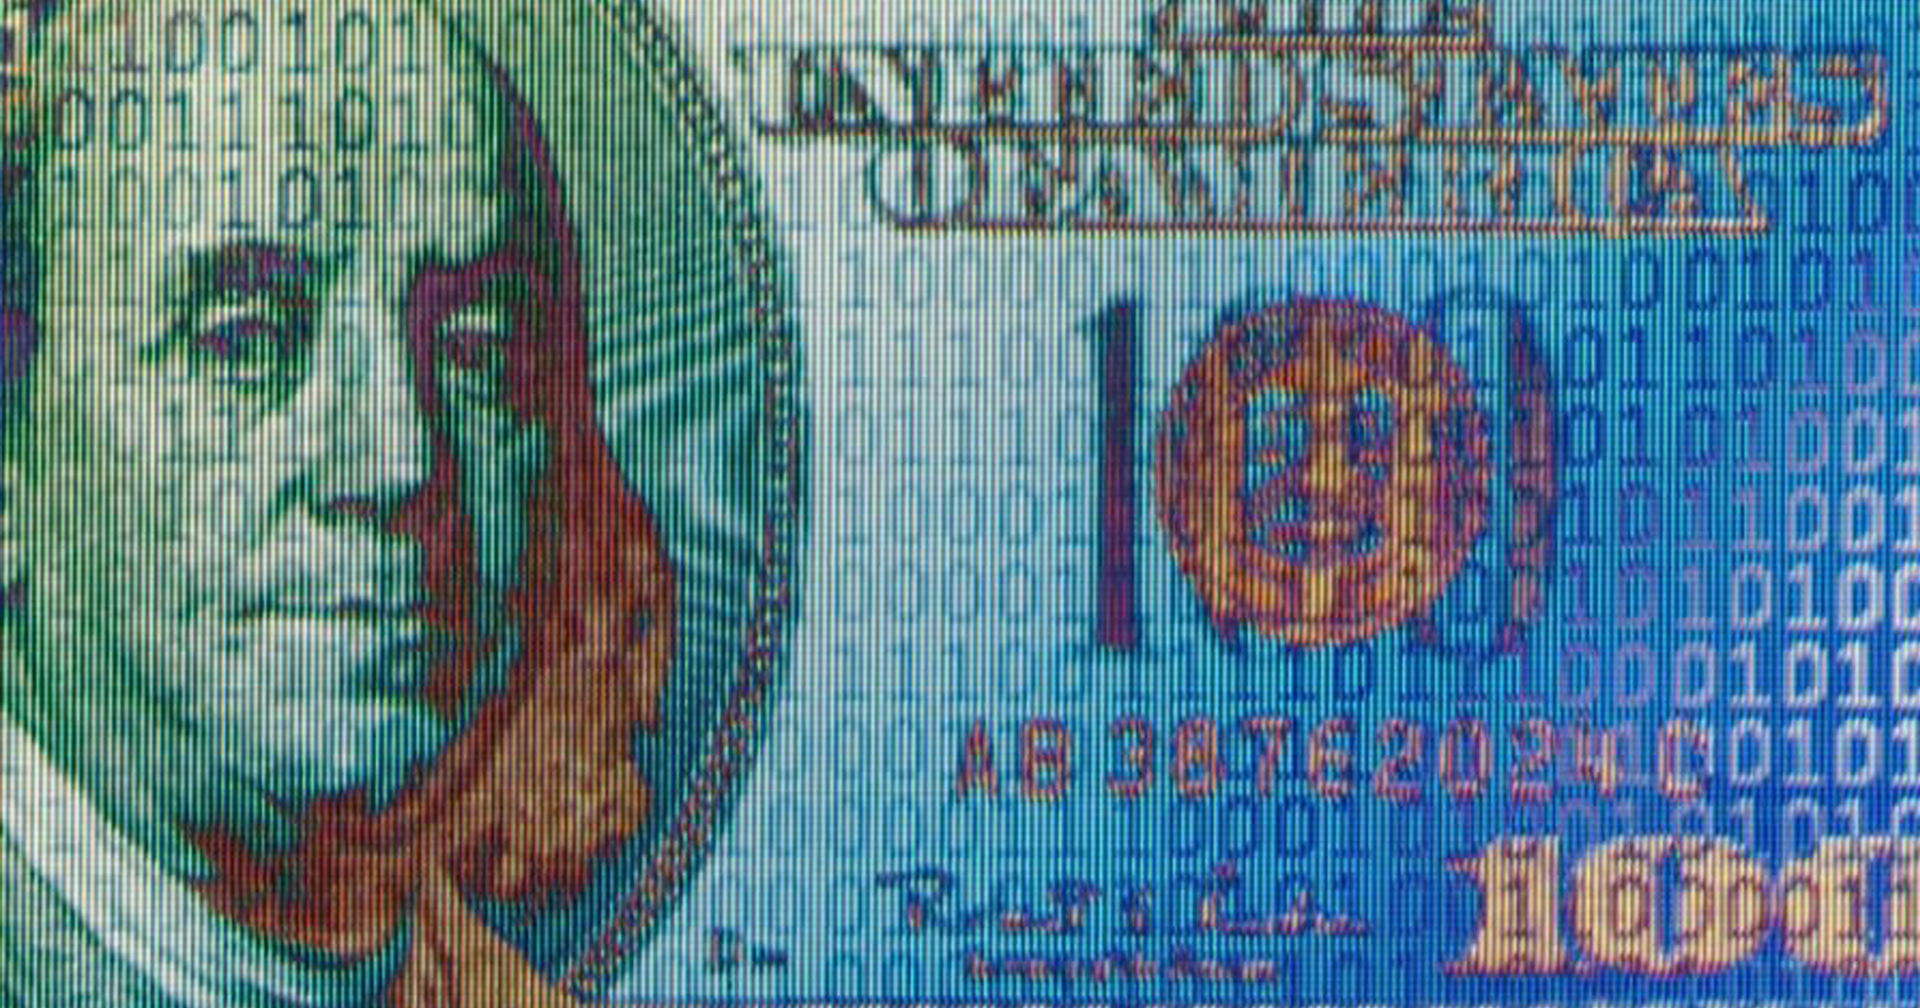 สหรัฐฯ ประกาศแผนทดสอบใช้สกุลเงินดิจิทัลใหม่ของรัฐบาลกลาง